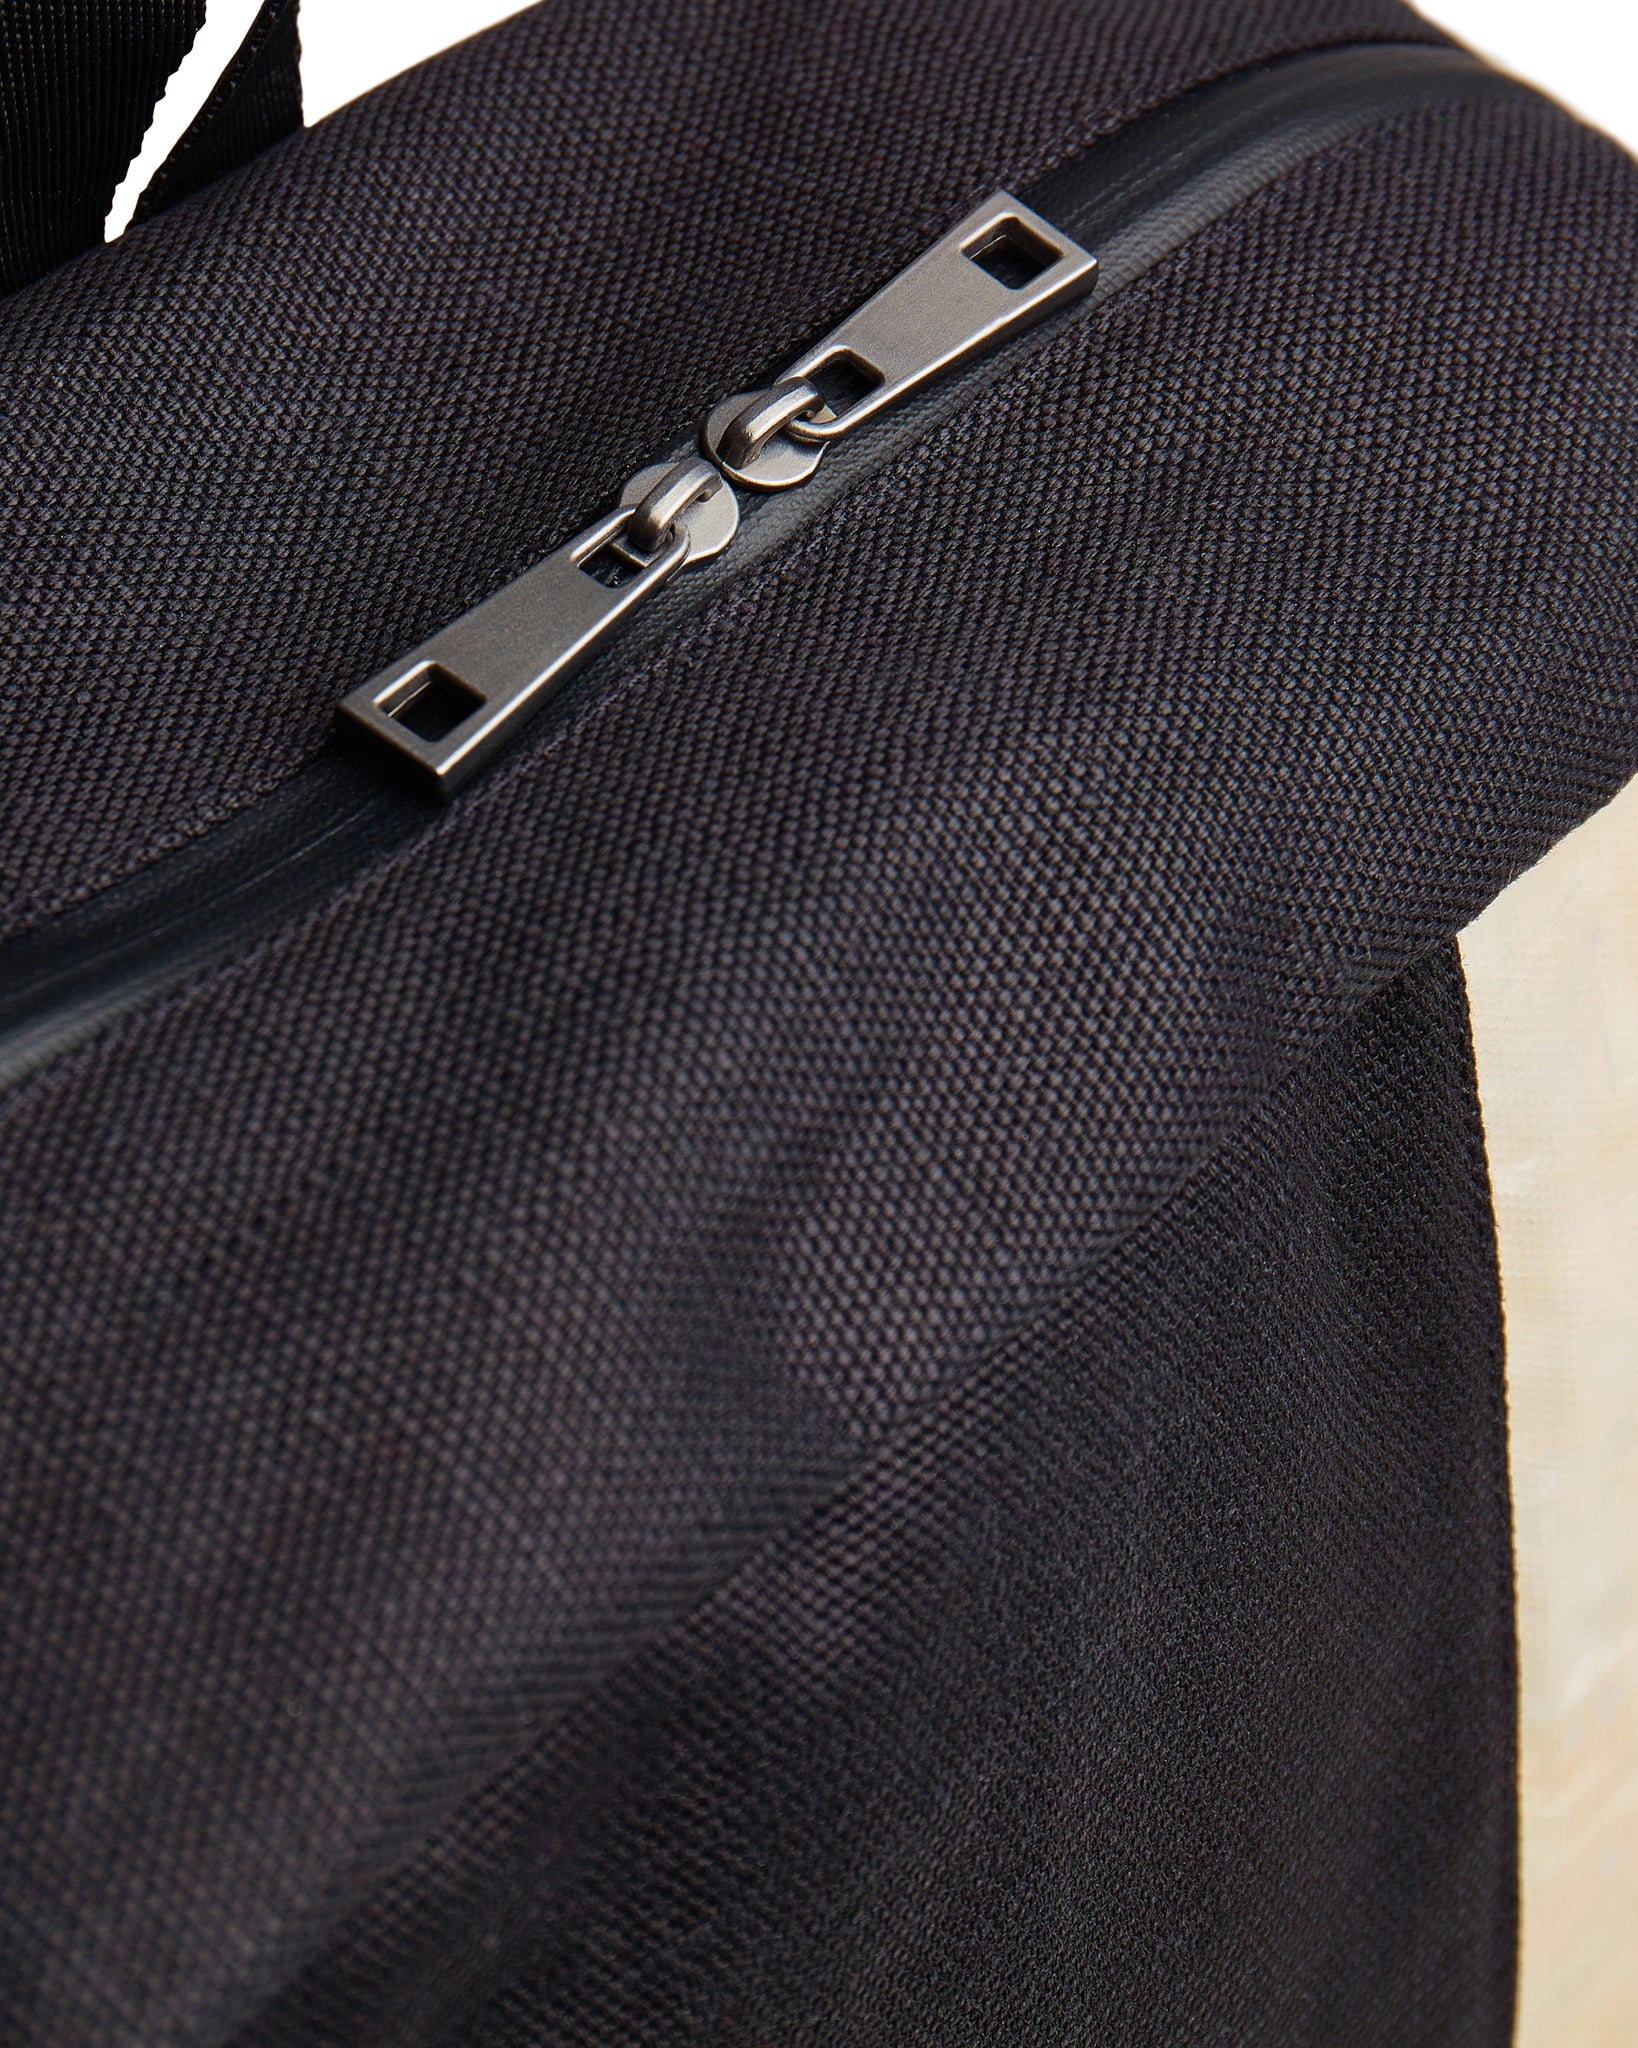 Superlativa® backpack model éclat formal